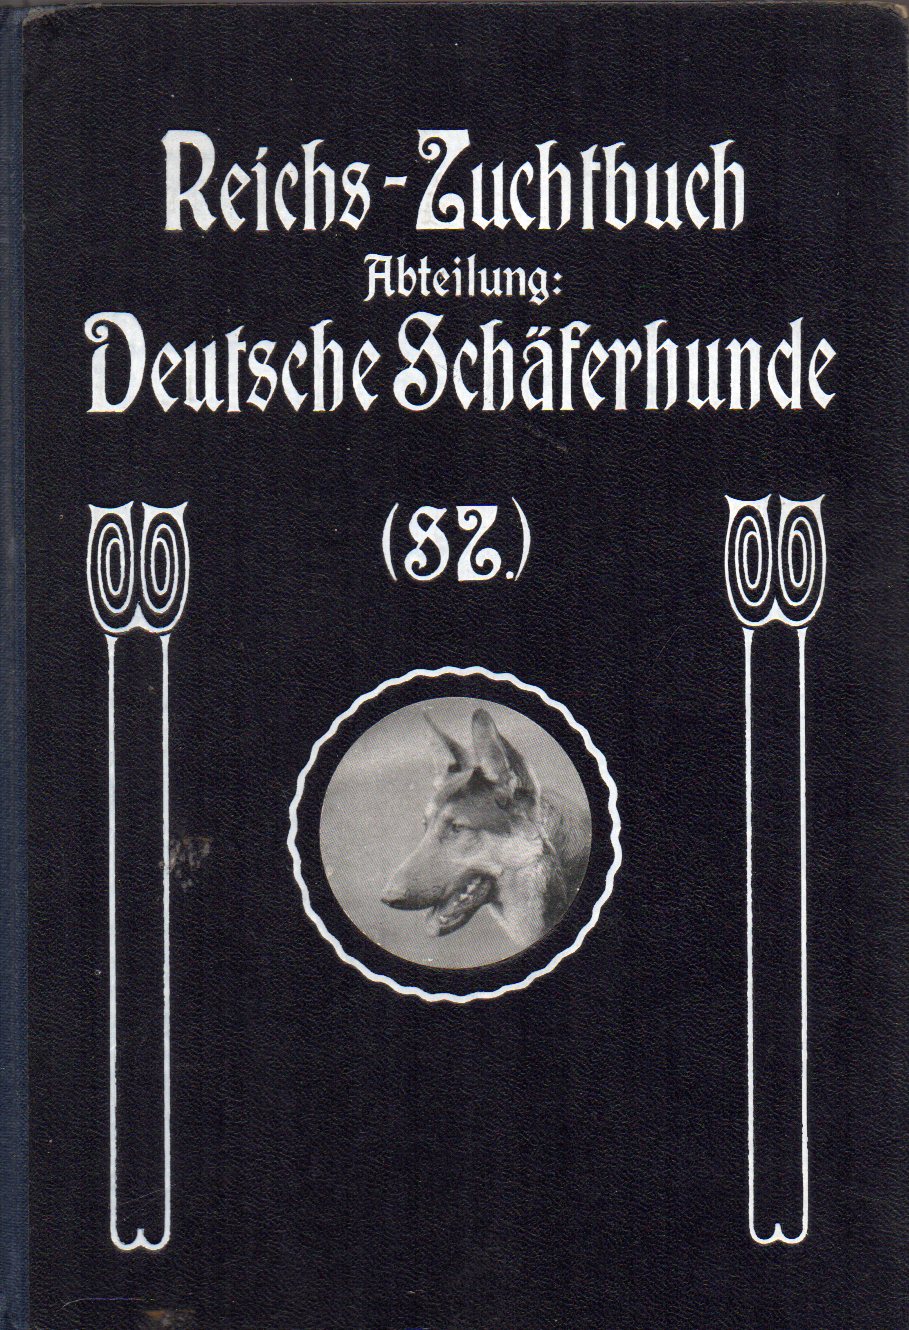 Reichsverband für das Deutsche Hundewesen (RDH)  Reichs-Zuchtbuch Abteilung: Deutsche Schäferhunde(SZ) 